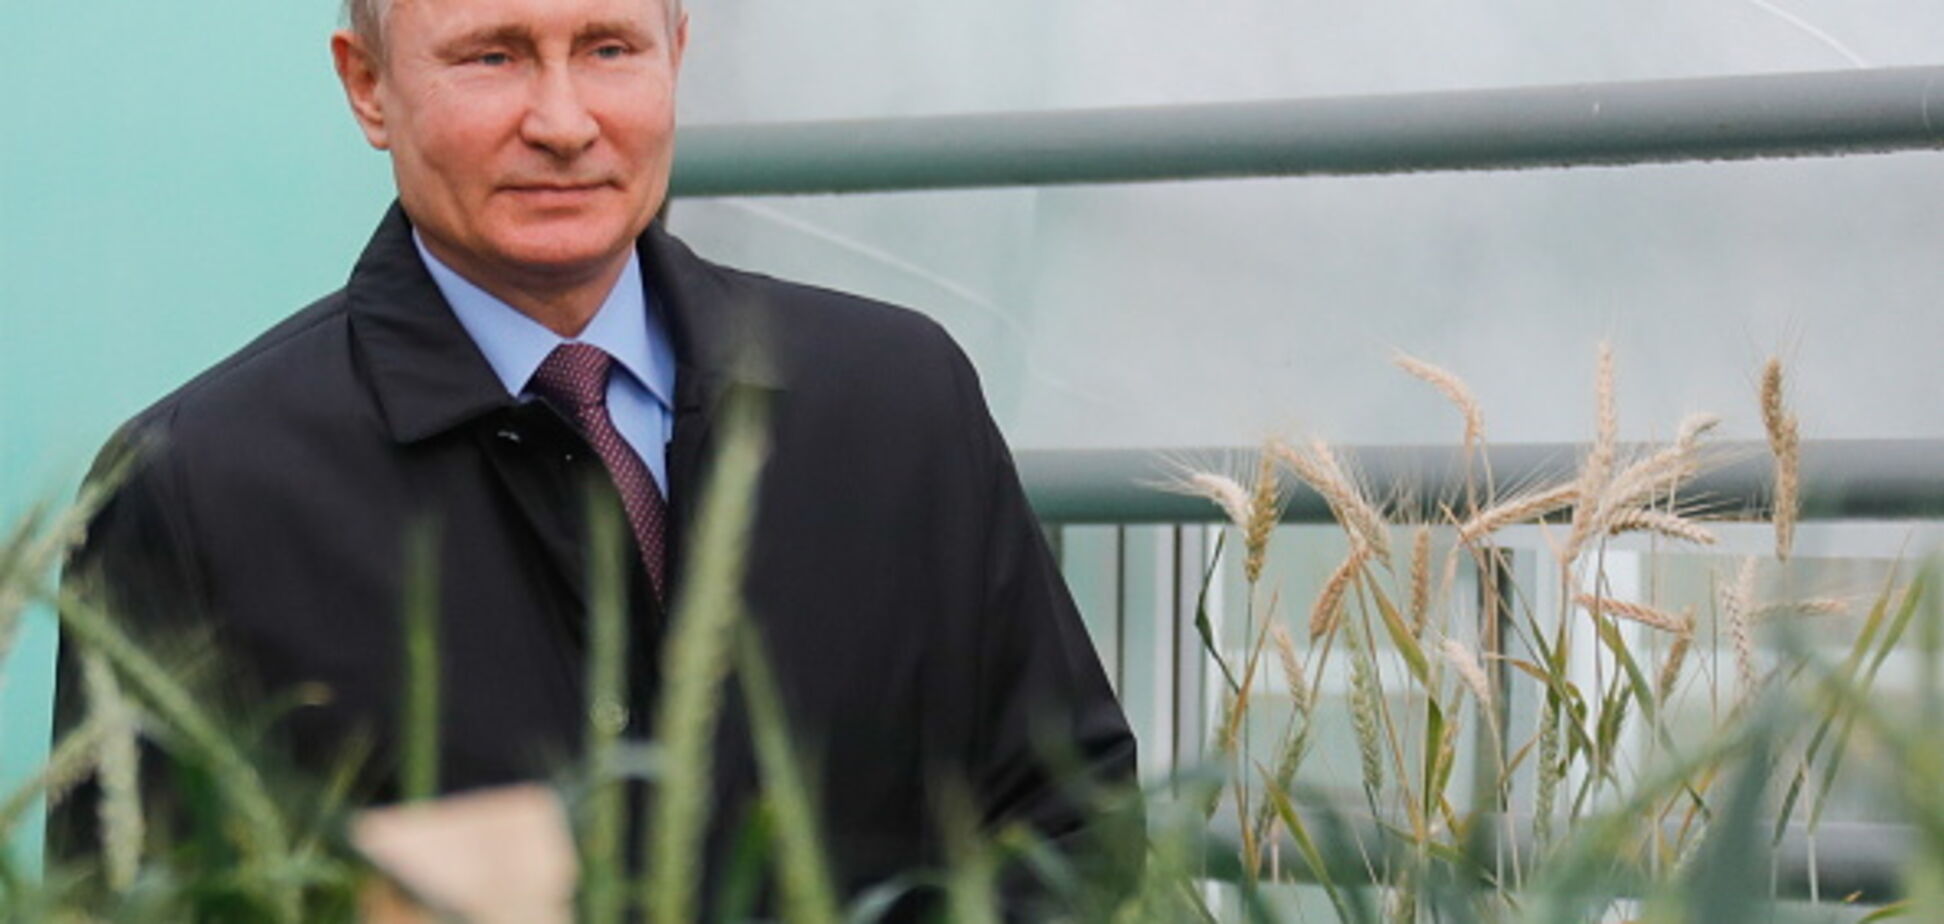 Пугает и волнует: журналисты узнали, что думают о Путине в различных странах мира